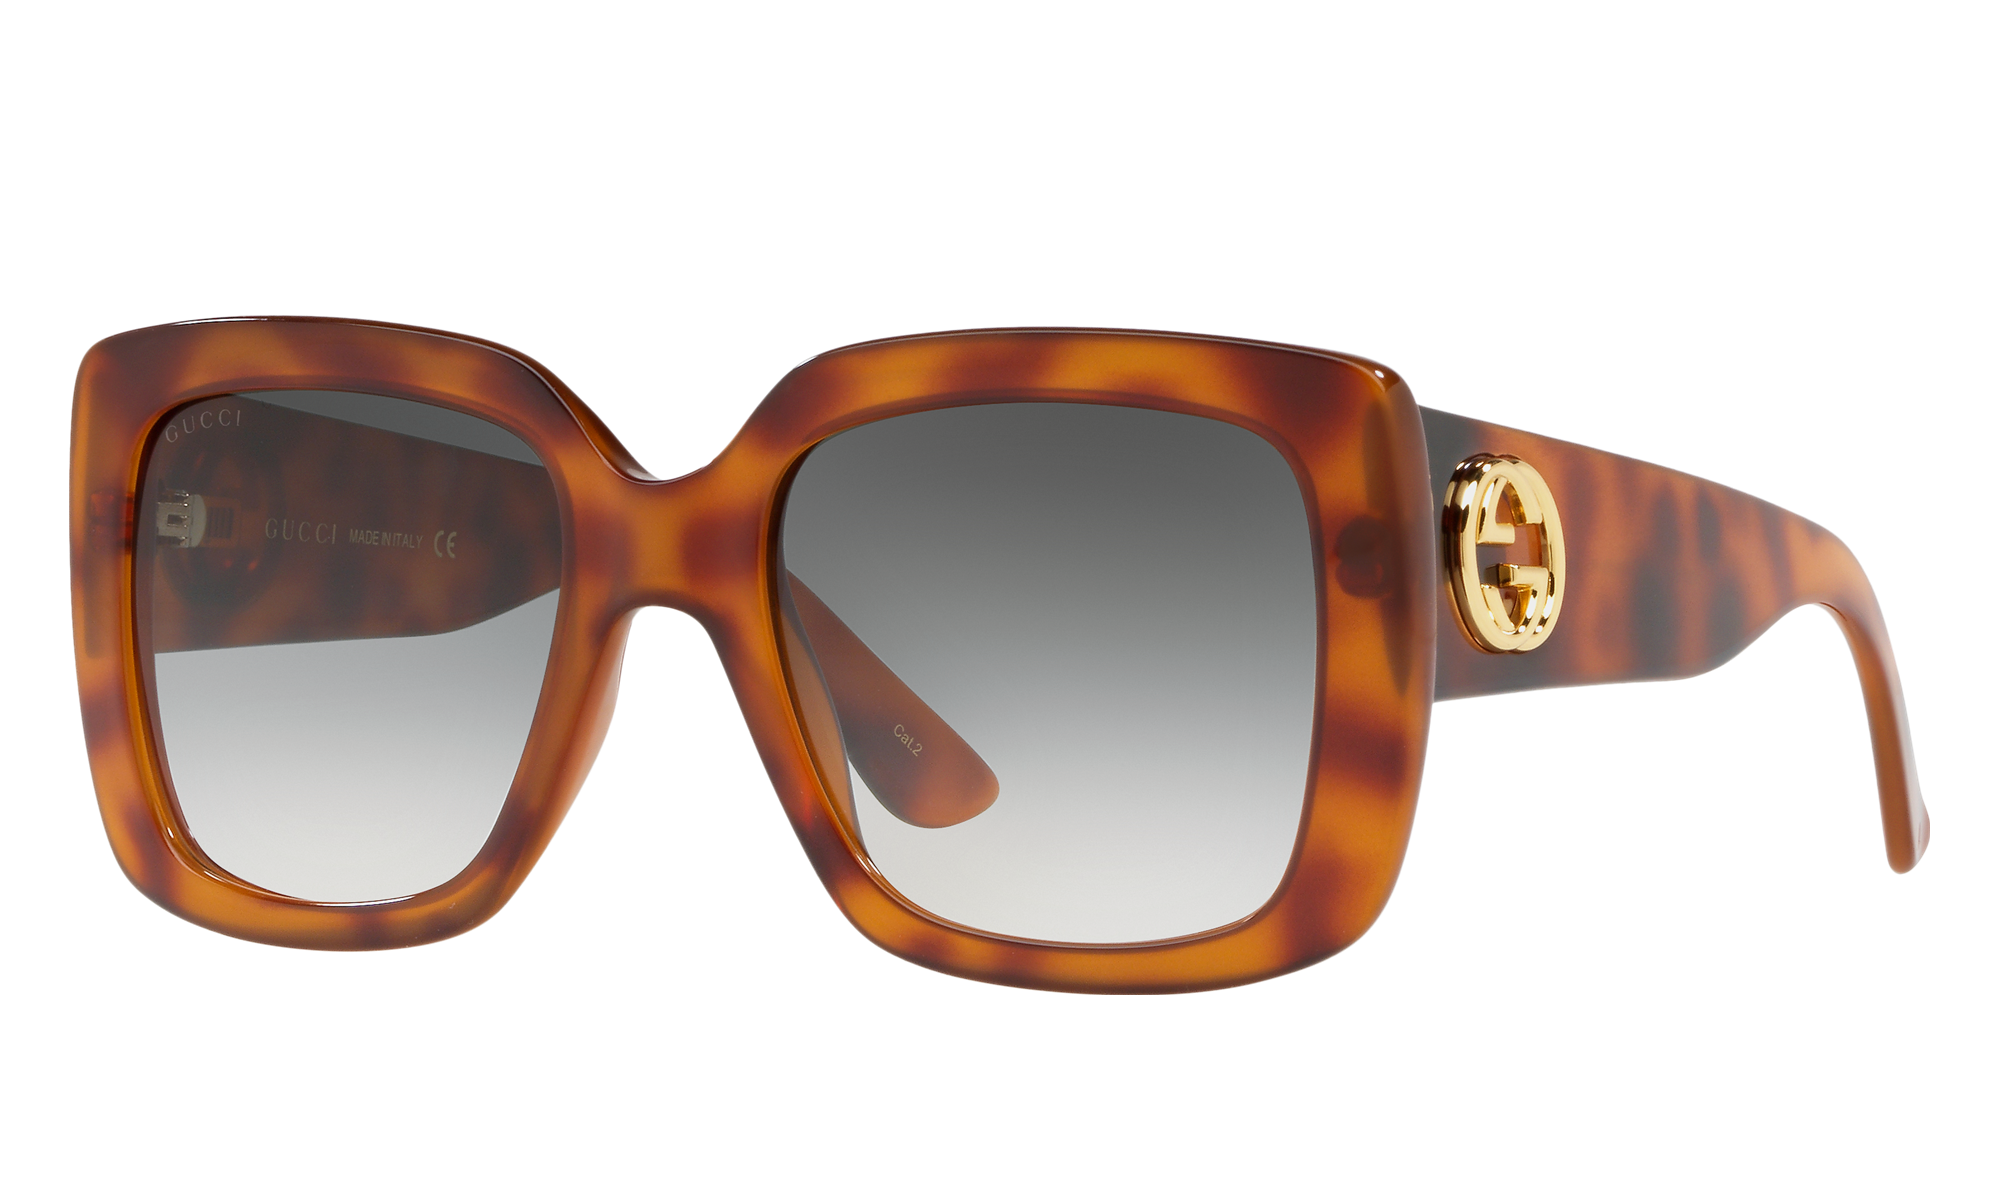 Gucci GG0141S | Glasses.com® | Free Shipping